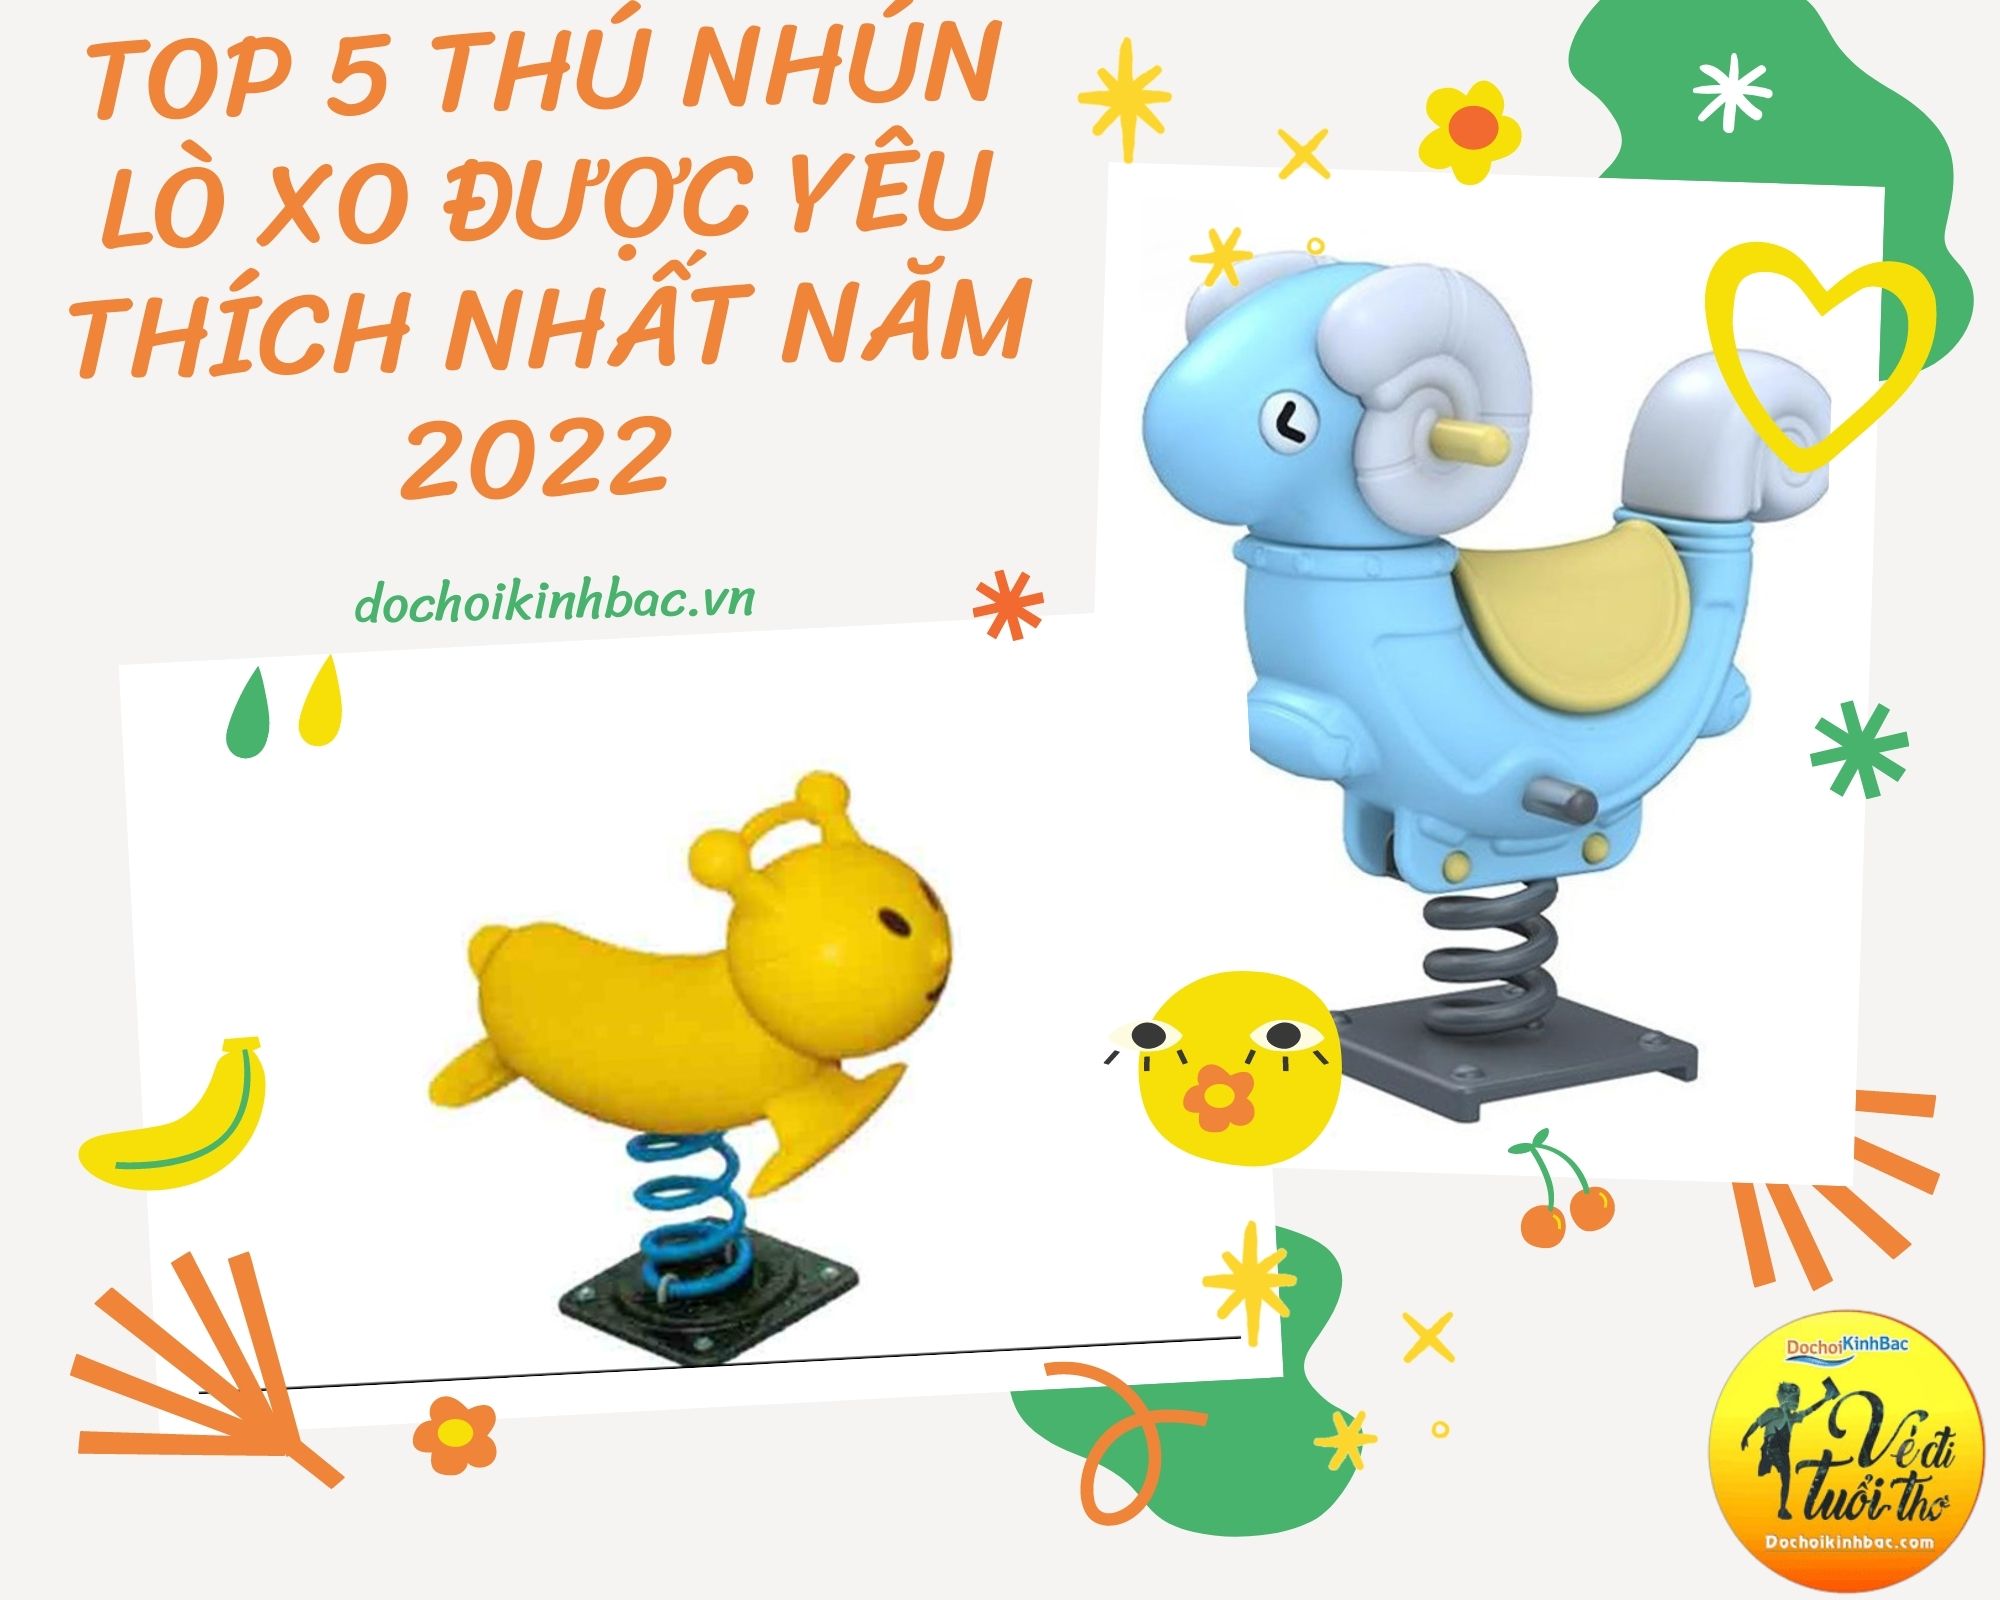 Top 5 Thú nhún lò xo được yêu thích nhất năm 2022 tại Vĩnh Yên, Bảo Yên, Lào Cai